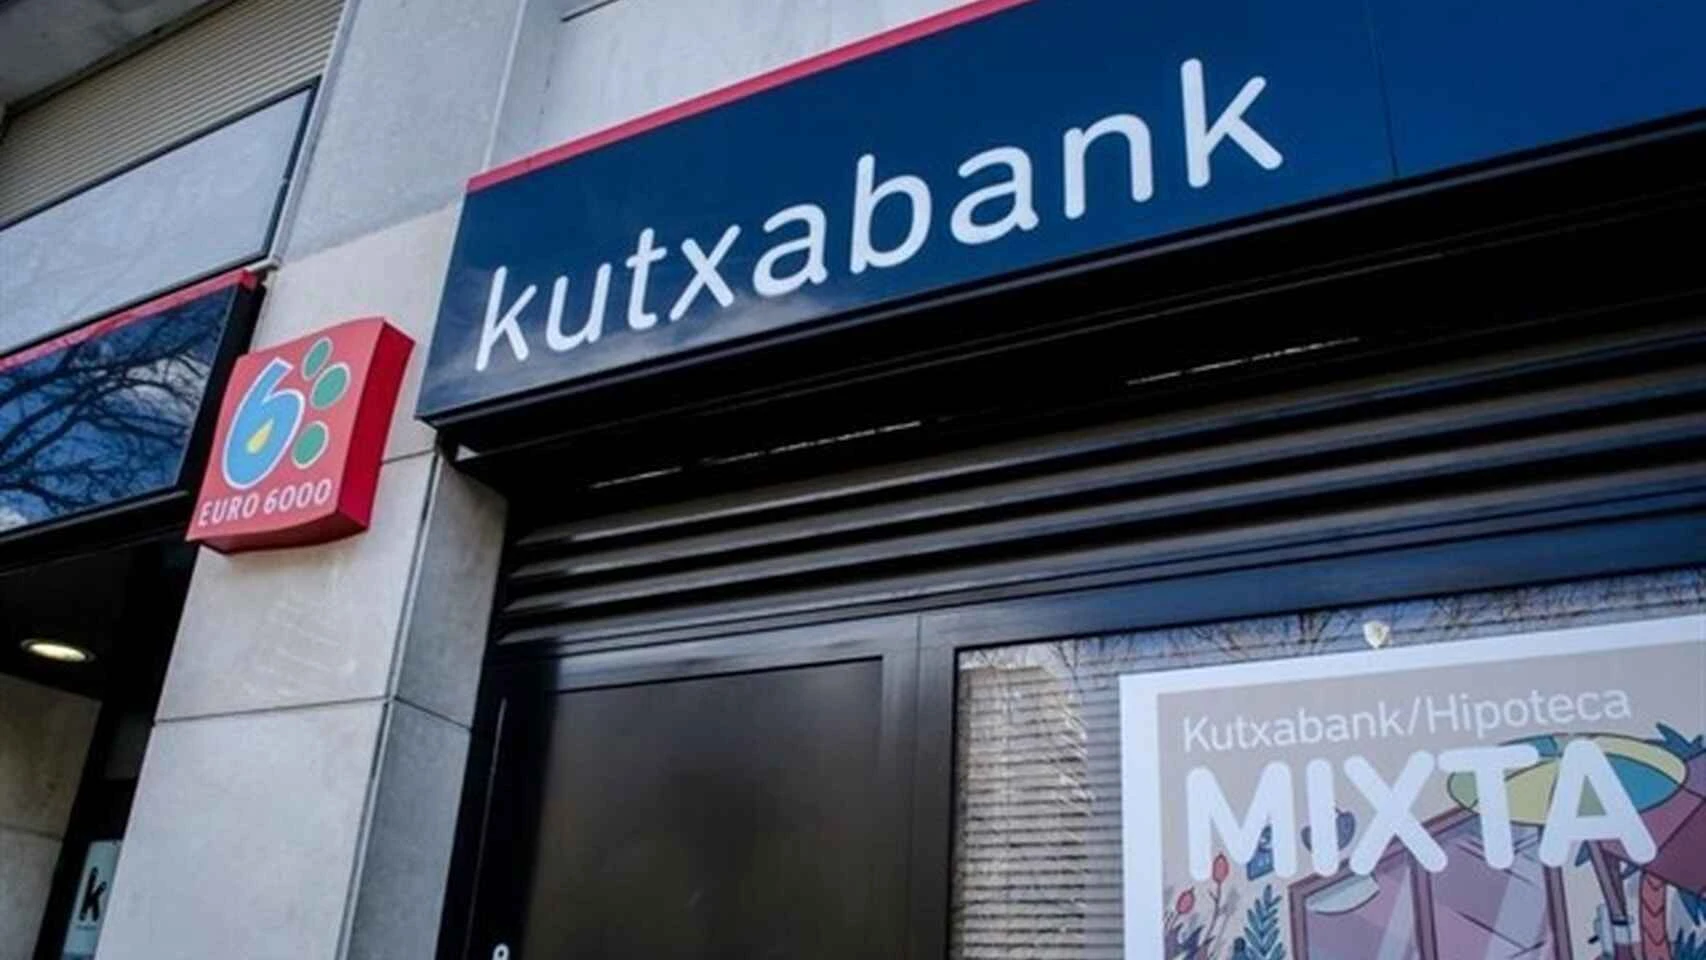  servicios y oficinas cajeros kutxabank